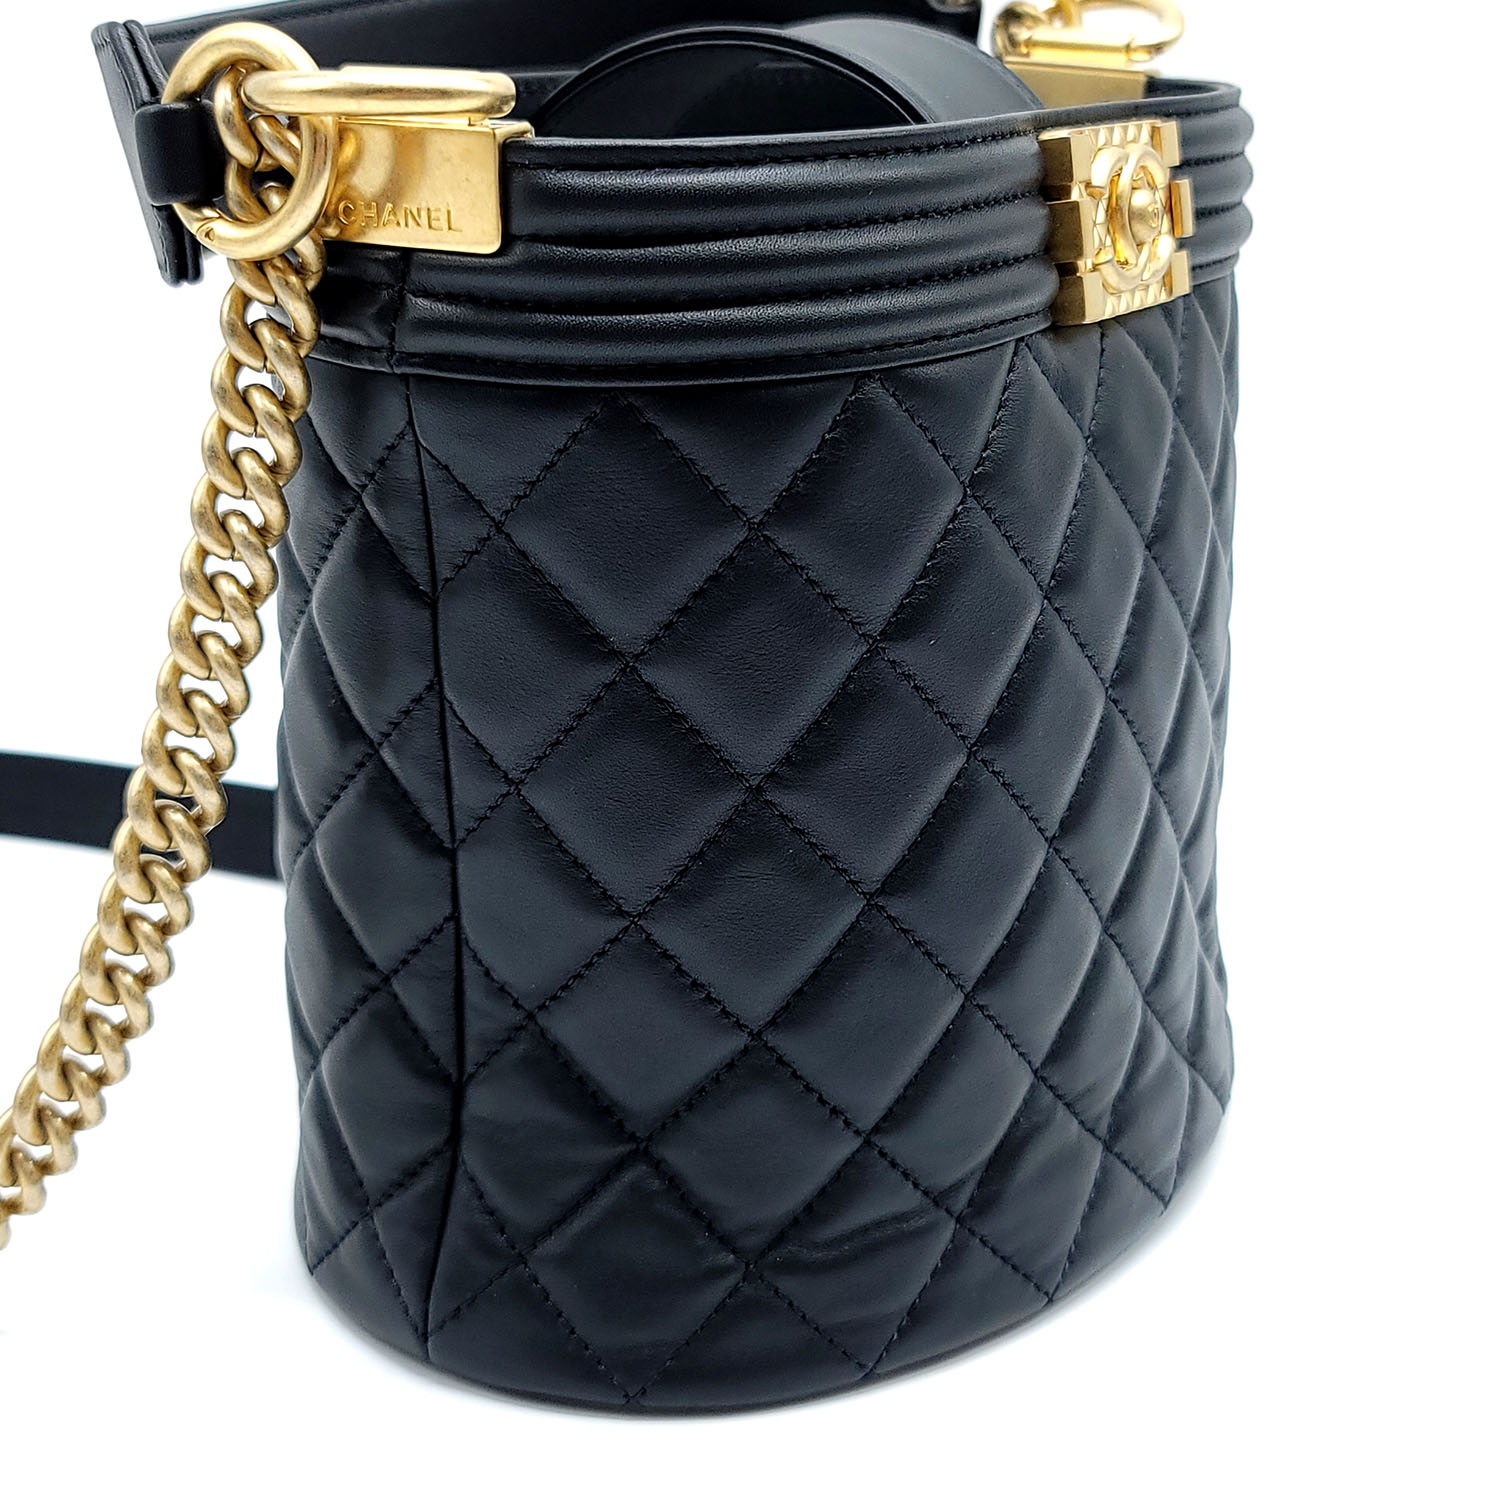 Chanel 2021 Boy Bucket Bag - Black Bucket Bags, Handbags - CHA938341